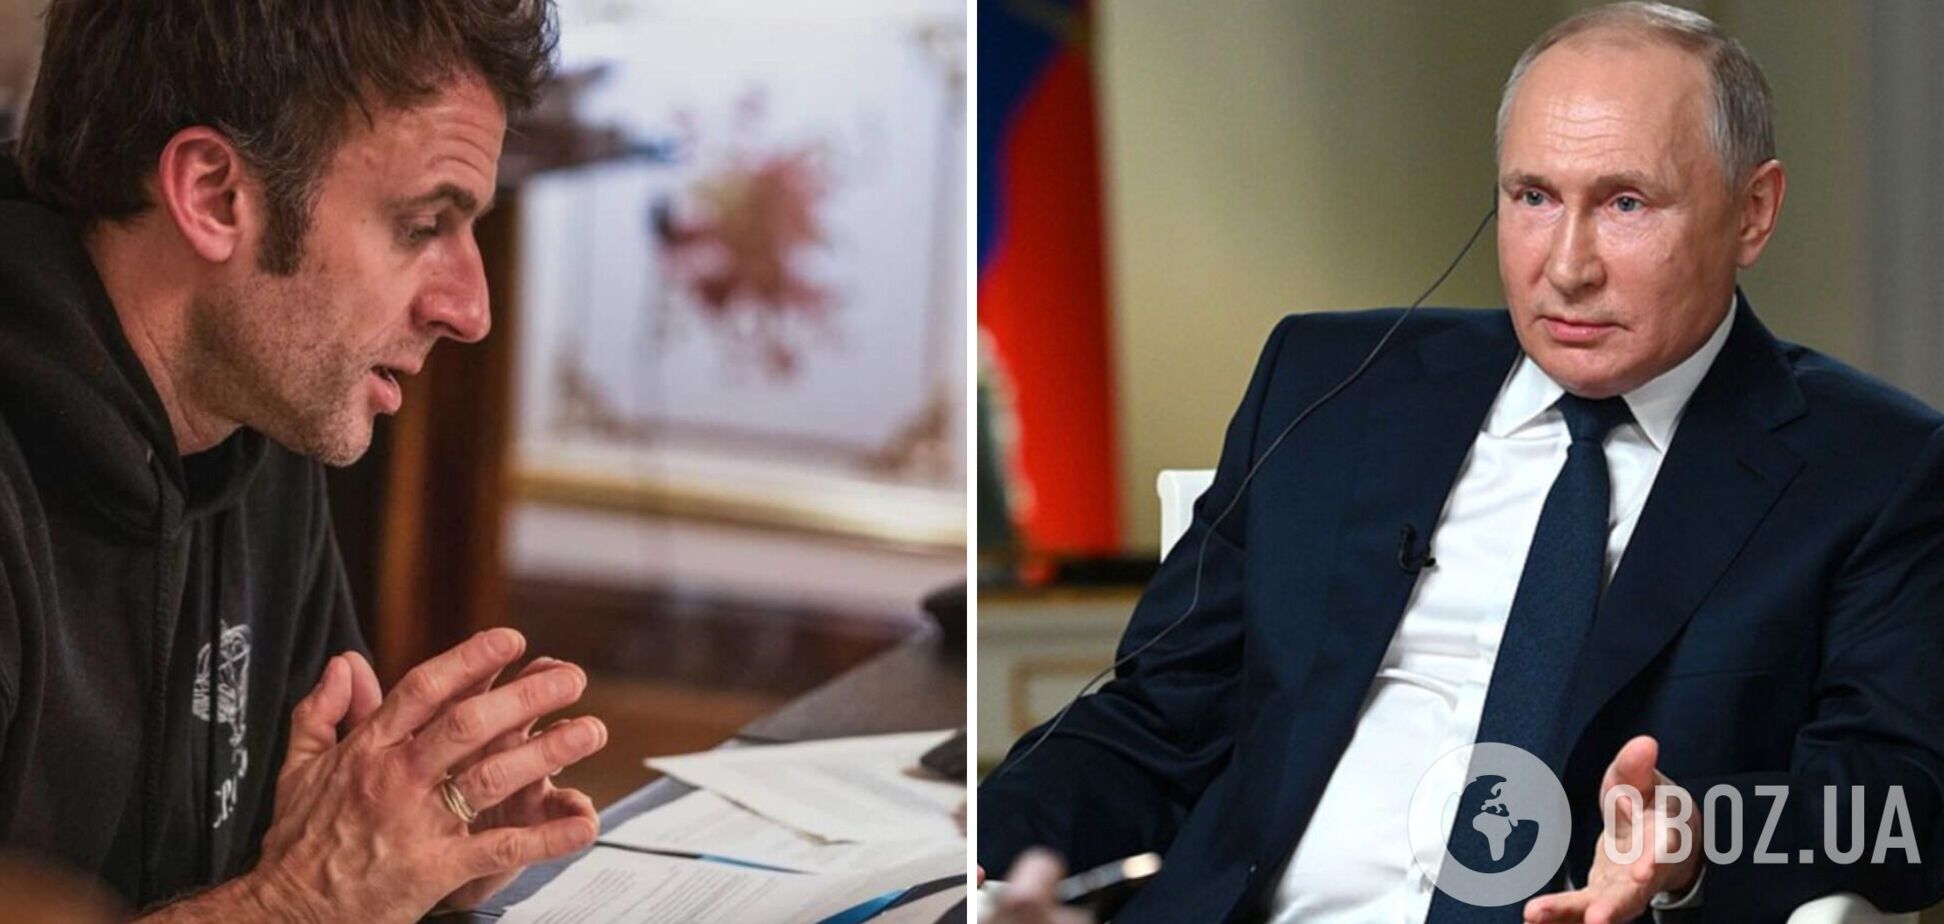 Путин призывал надавить на Зеленского: опубликована стенограмма разговора президентов РФ и Франции накануне вторжения 24 февраля